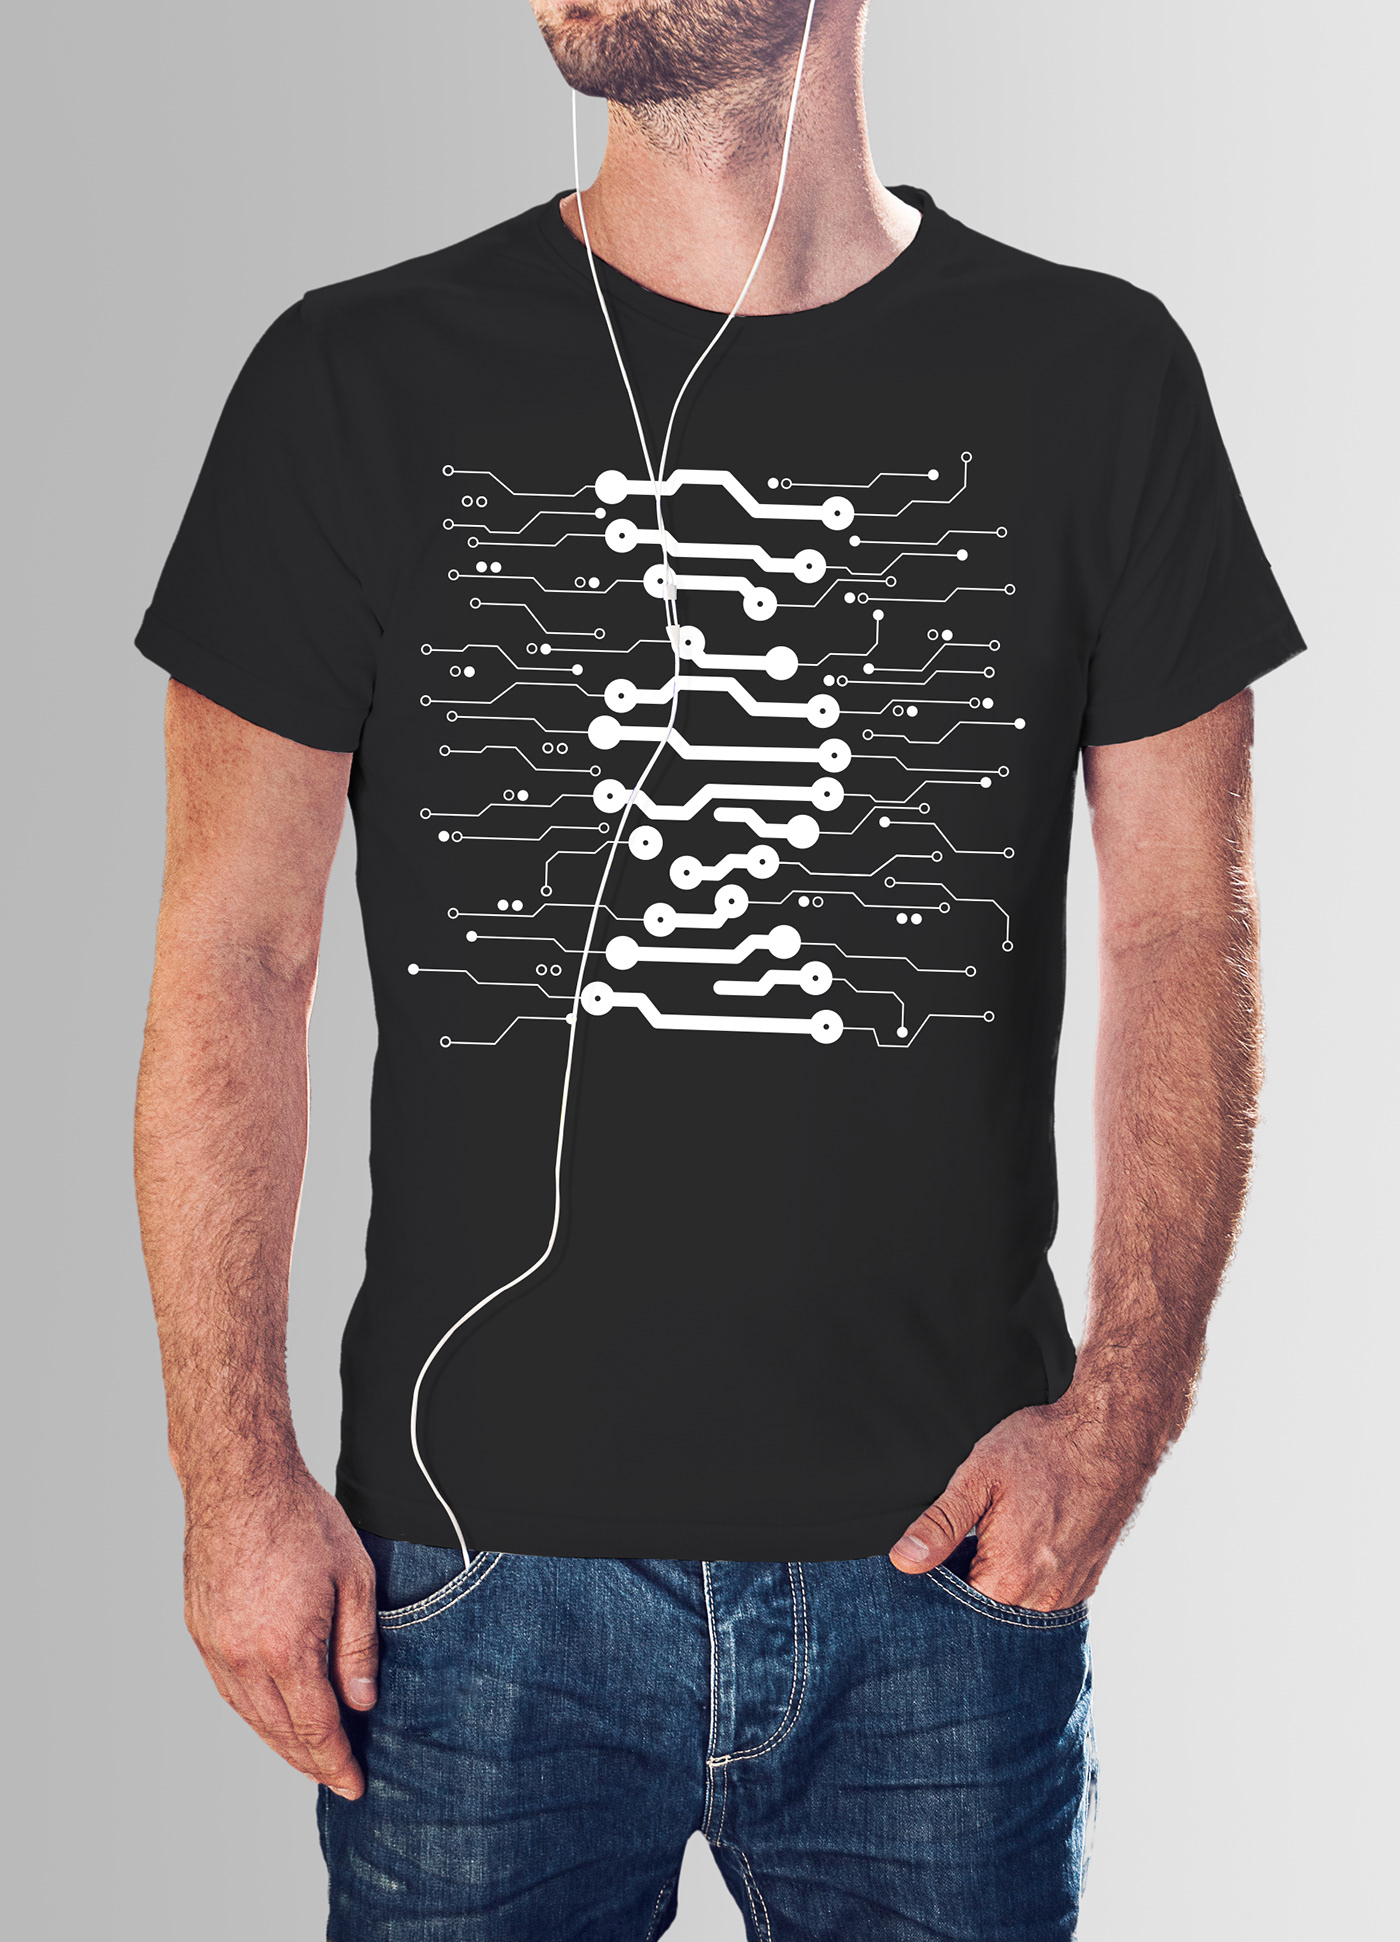 t-shirt print Fashion  DNA microcheme Style creative Data Data carrier